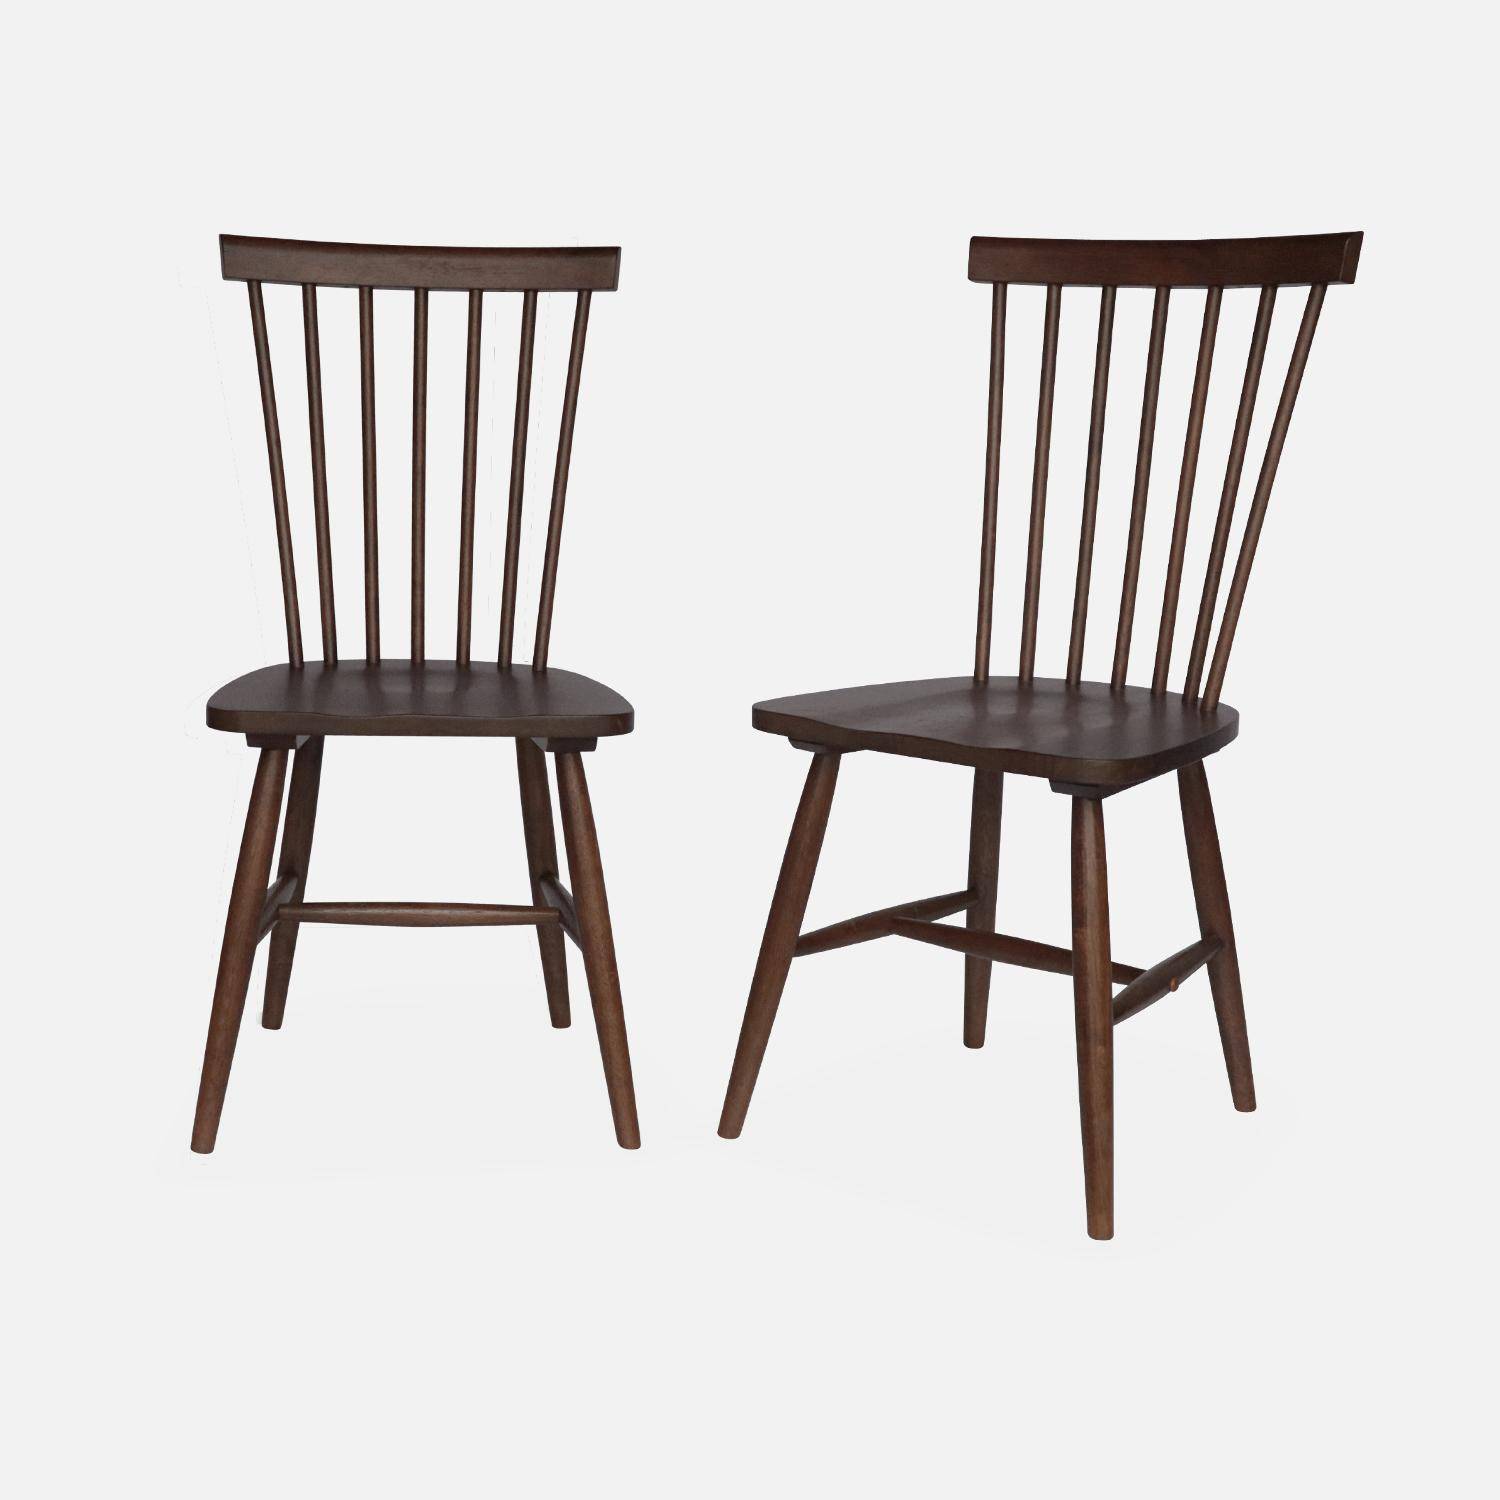 Conjunto de 2 cadeiras de nogueira com ripas de madeira de borracha, ROMIE, L 50,8 x P 44,2 x A 90cm. Photo4